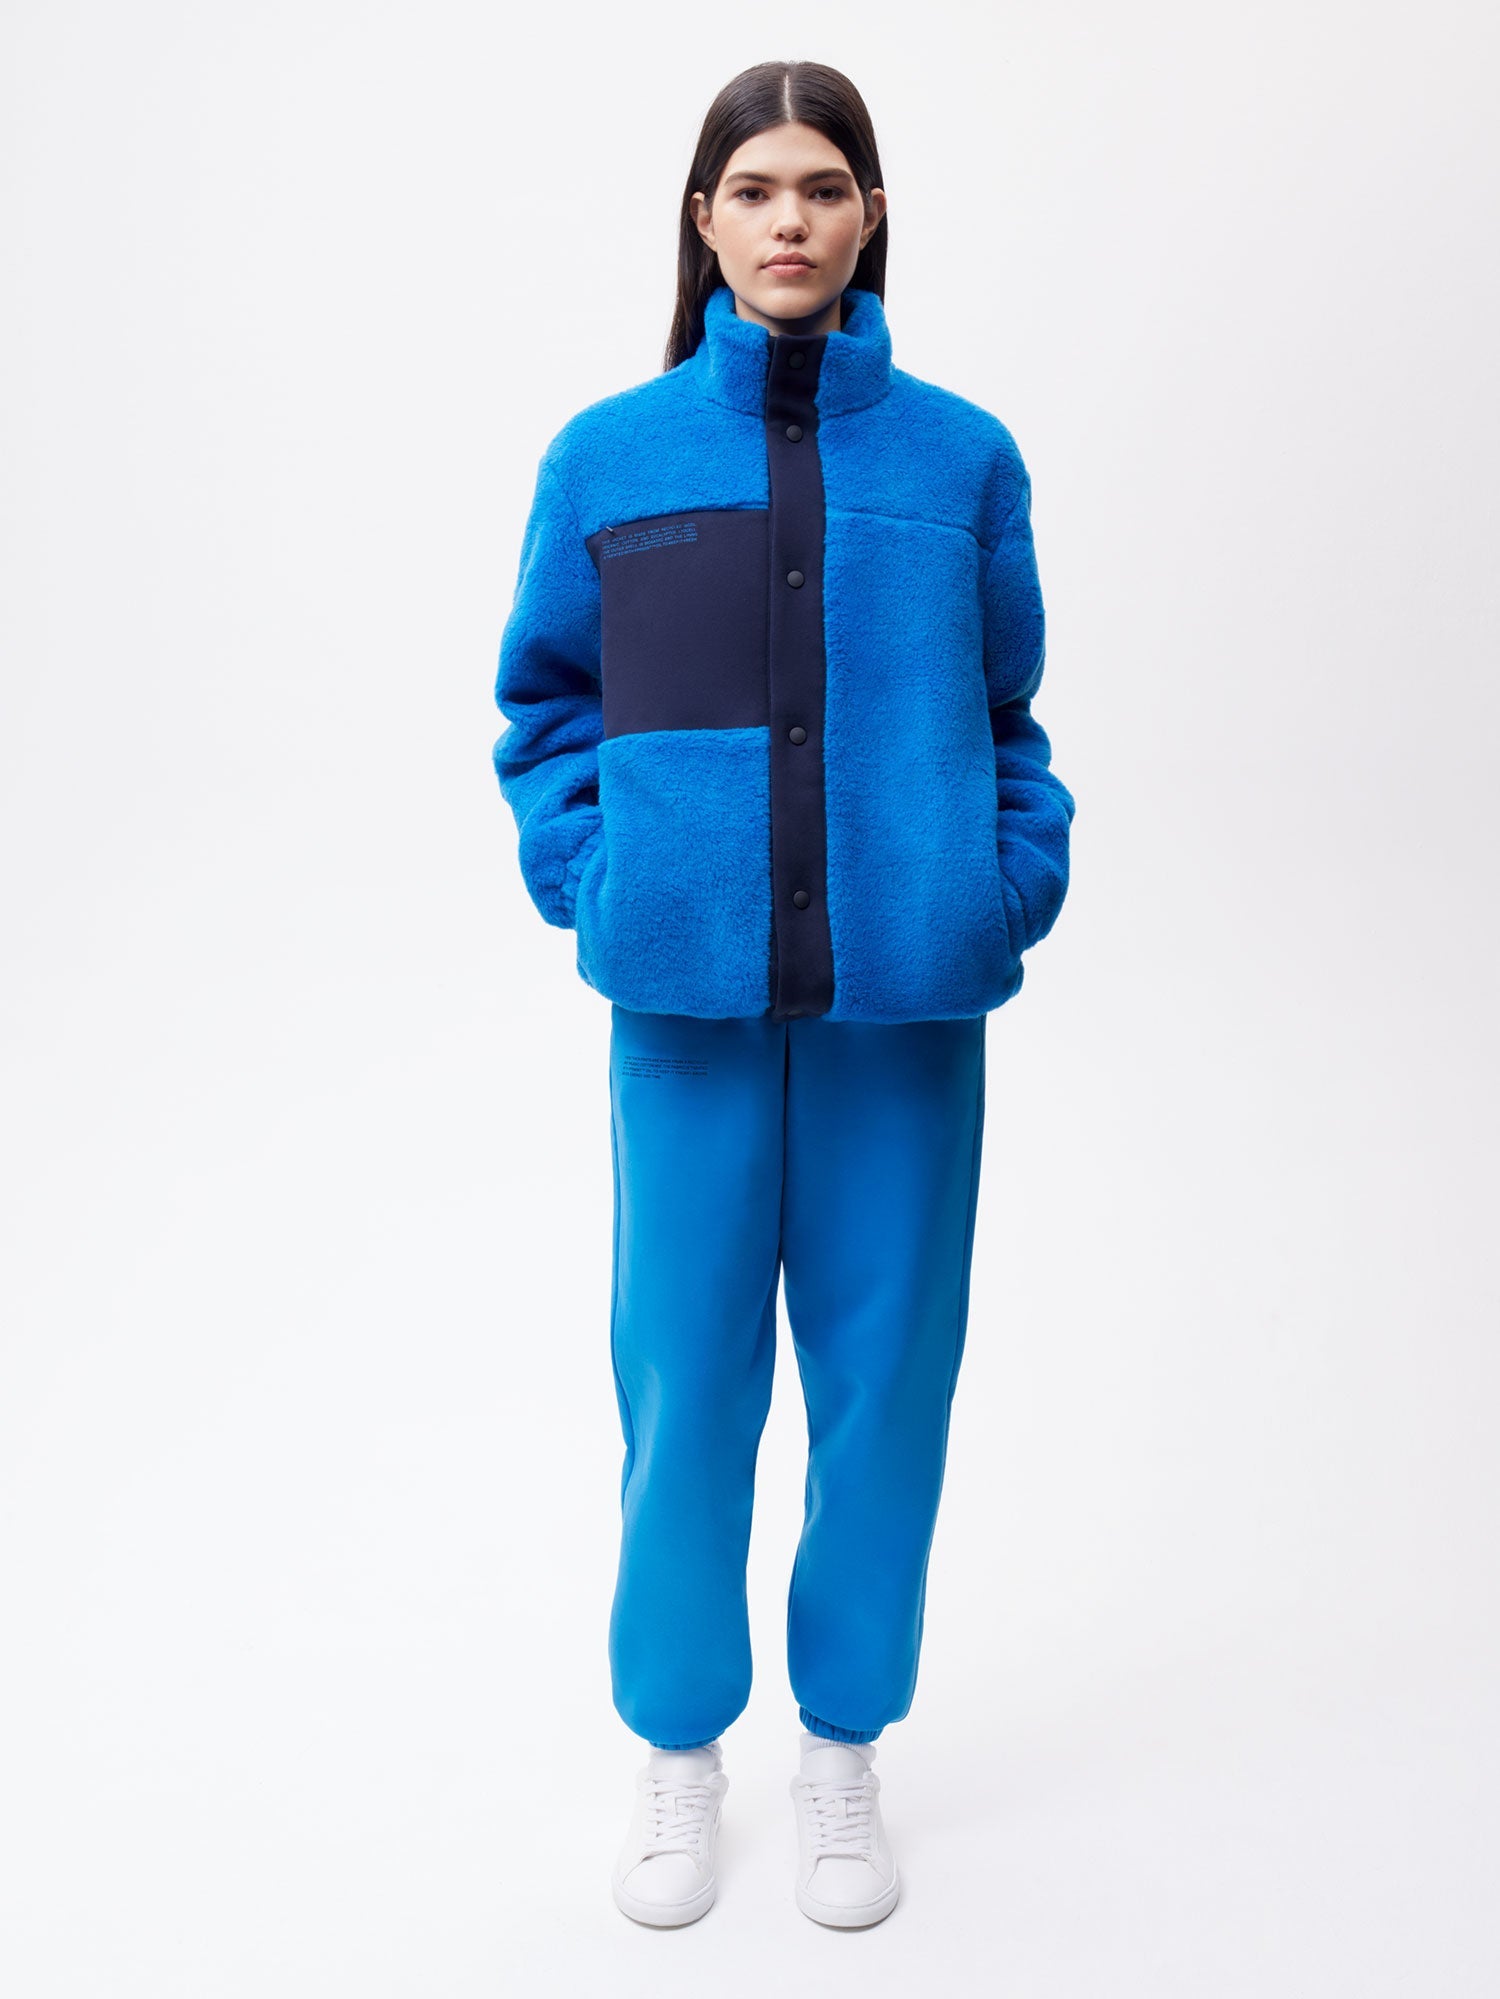 Recycled Wool Fleece Jacket—cerulean blue female